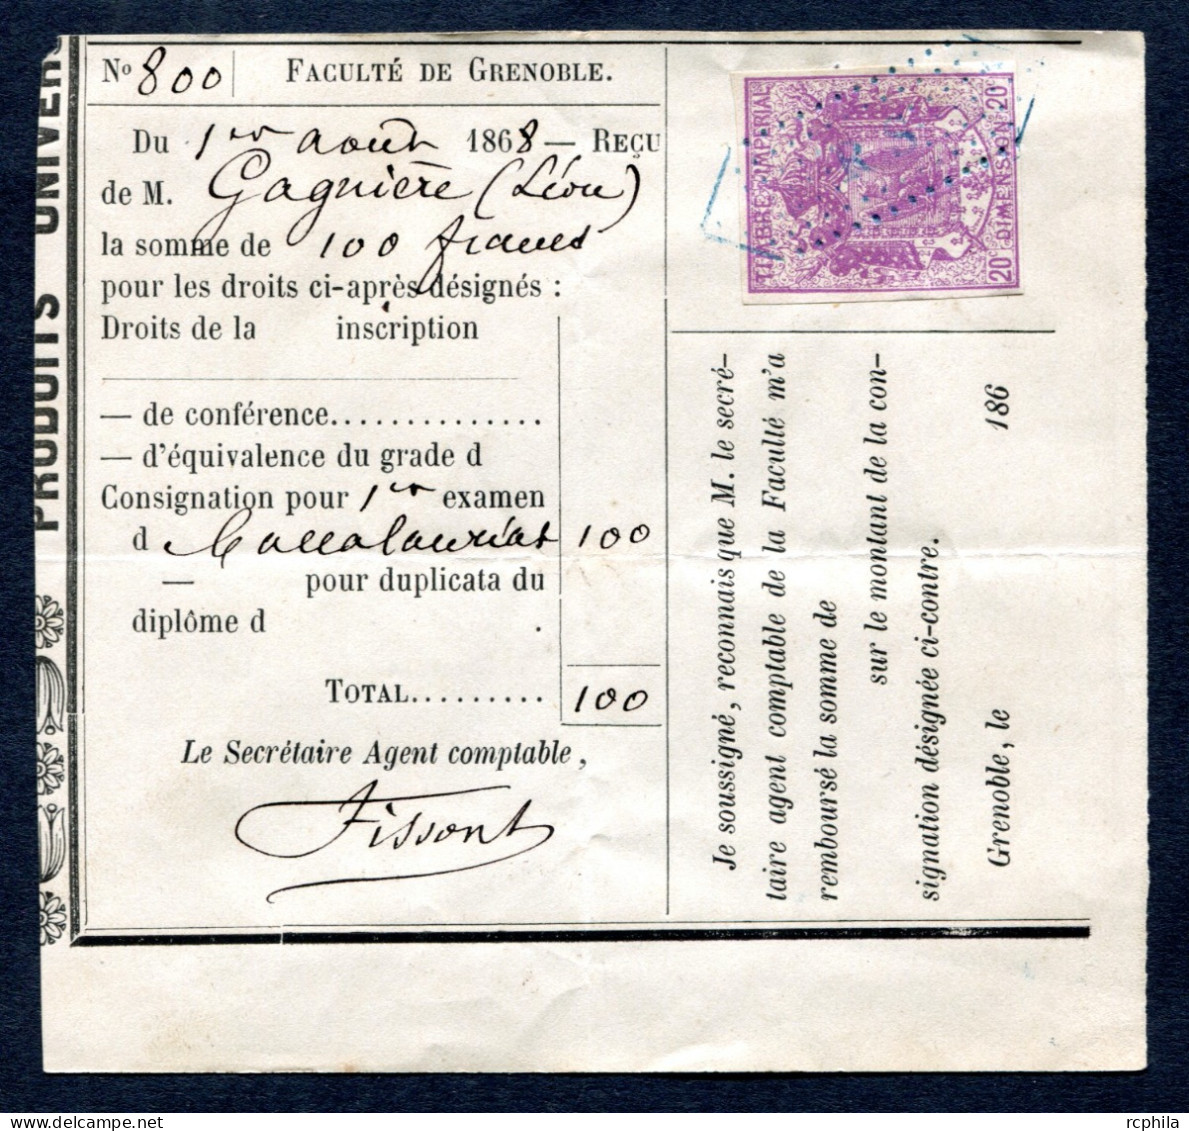 RC 27645 FRANCE 1868 - 20c TIMBRE FISCAL DE DIMENSION SUR DOCUMENT DE LA FACULTÉ DE GRENOBLE 1er EXAMEN DU BACCALAURÉAT - Covers & Documents